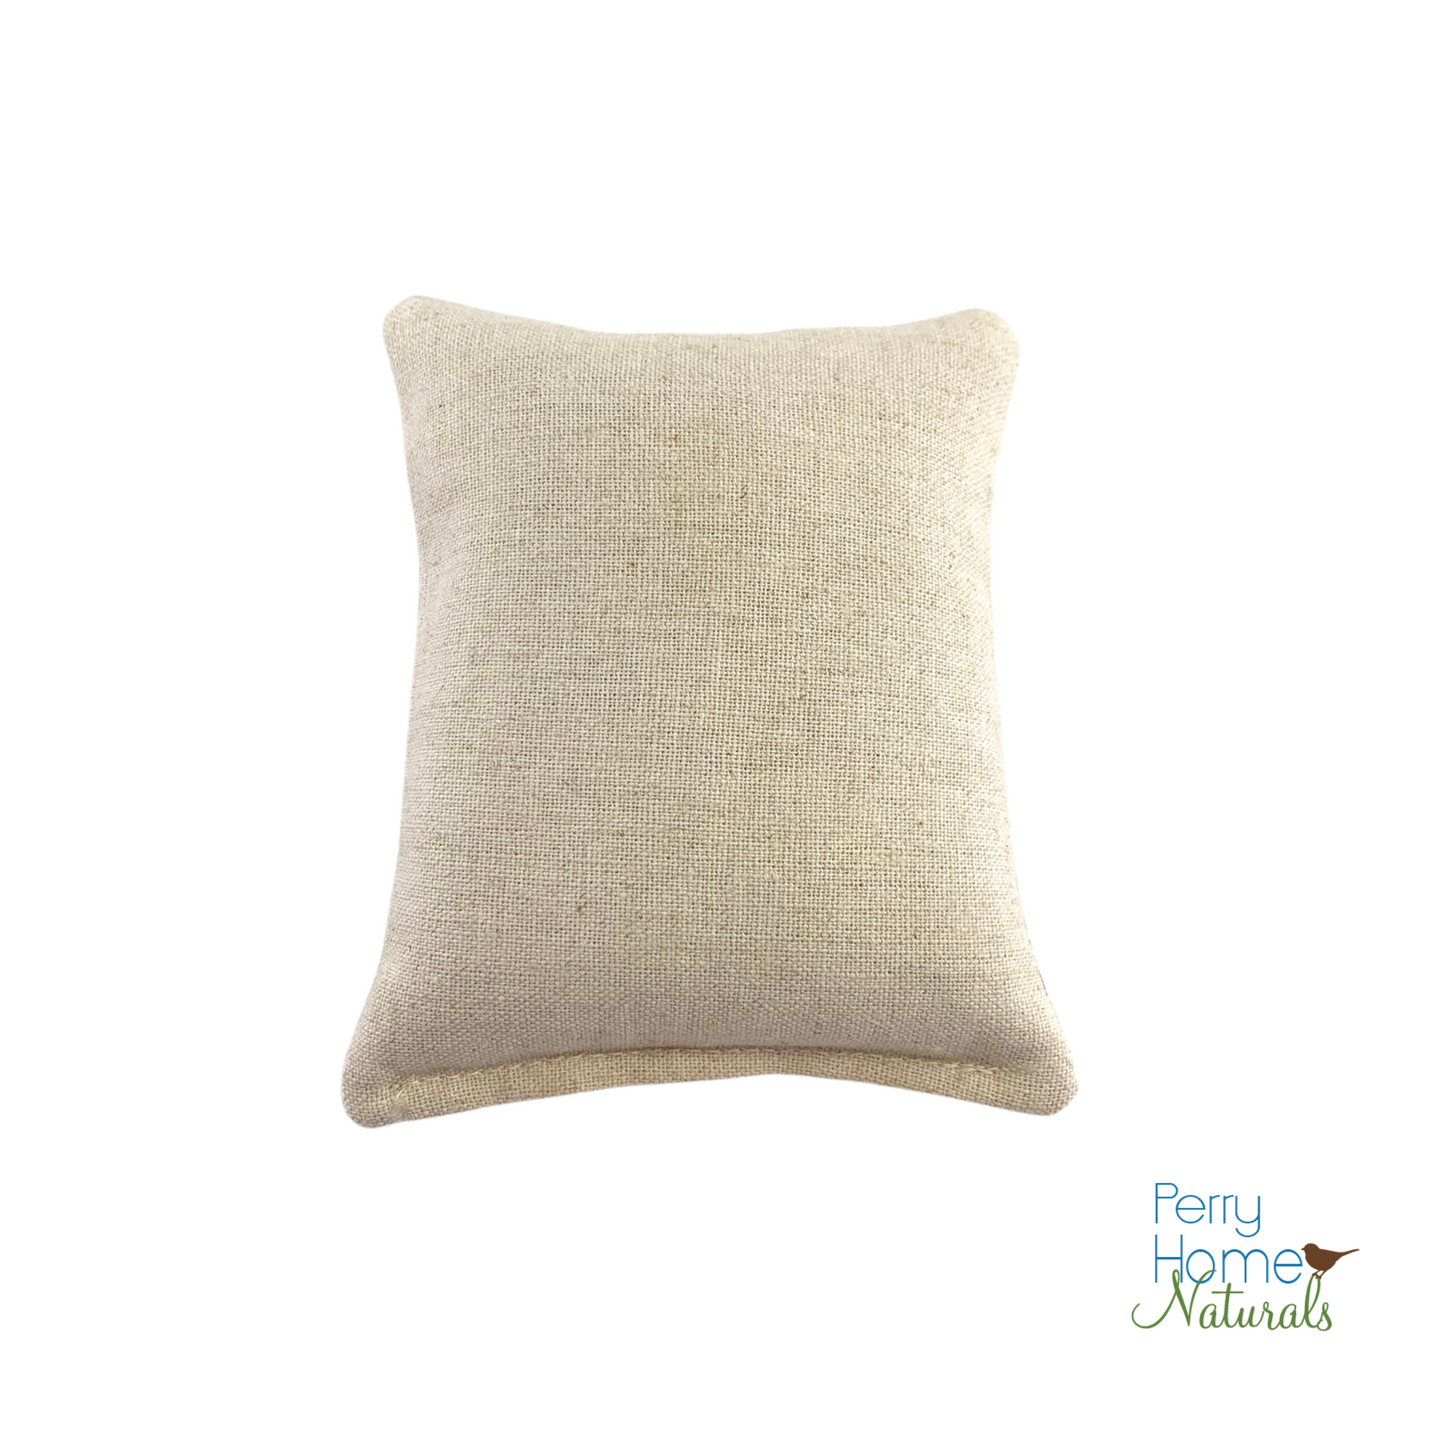 Maine Balsam Fir Pillow with Pine Print